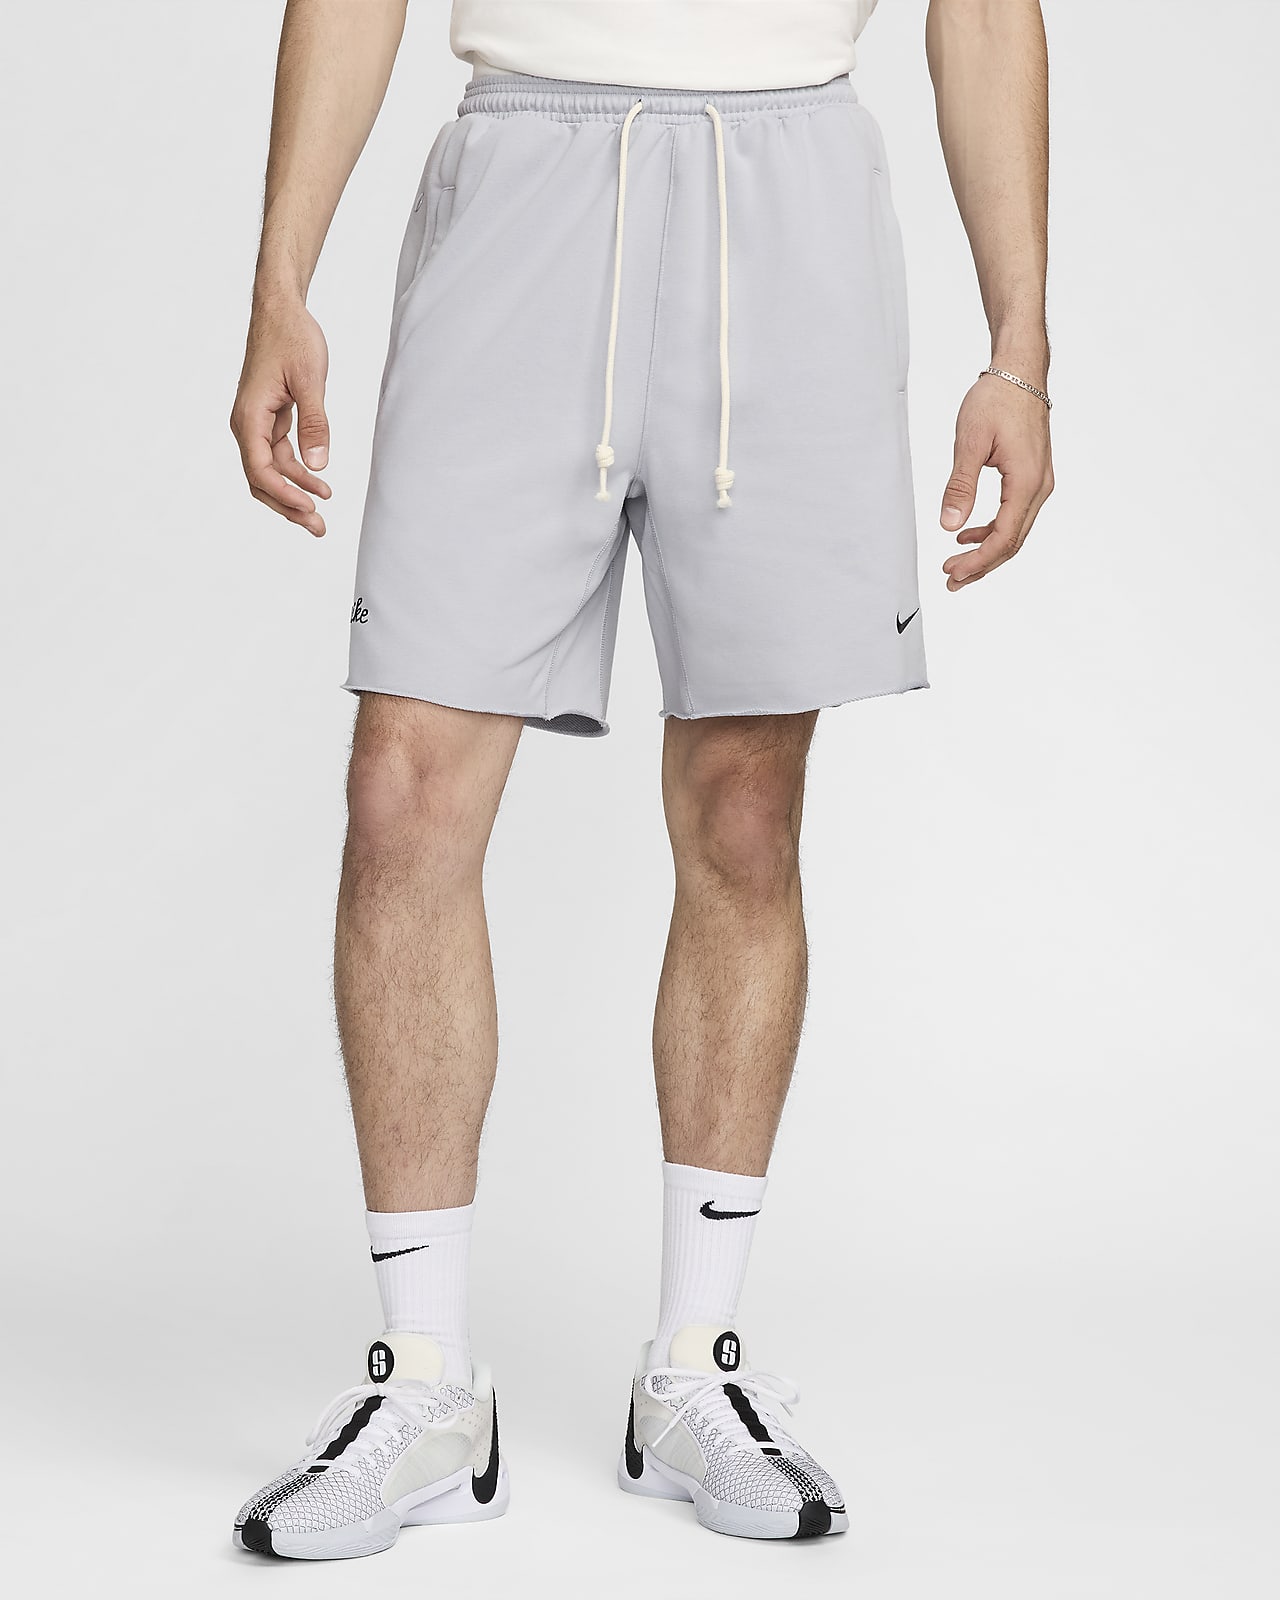 Nike Standard Issue Dri-FIT 20,5 cm-es férfi kosárlabdás rövidnadrág